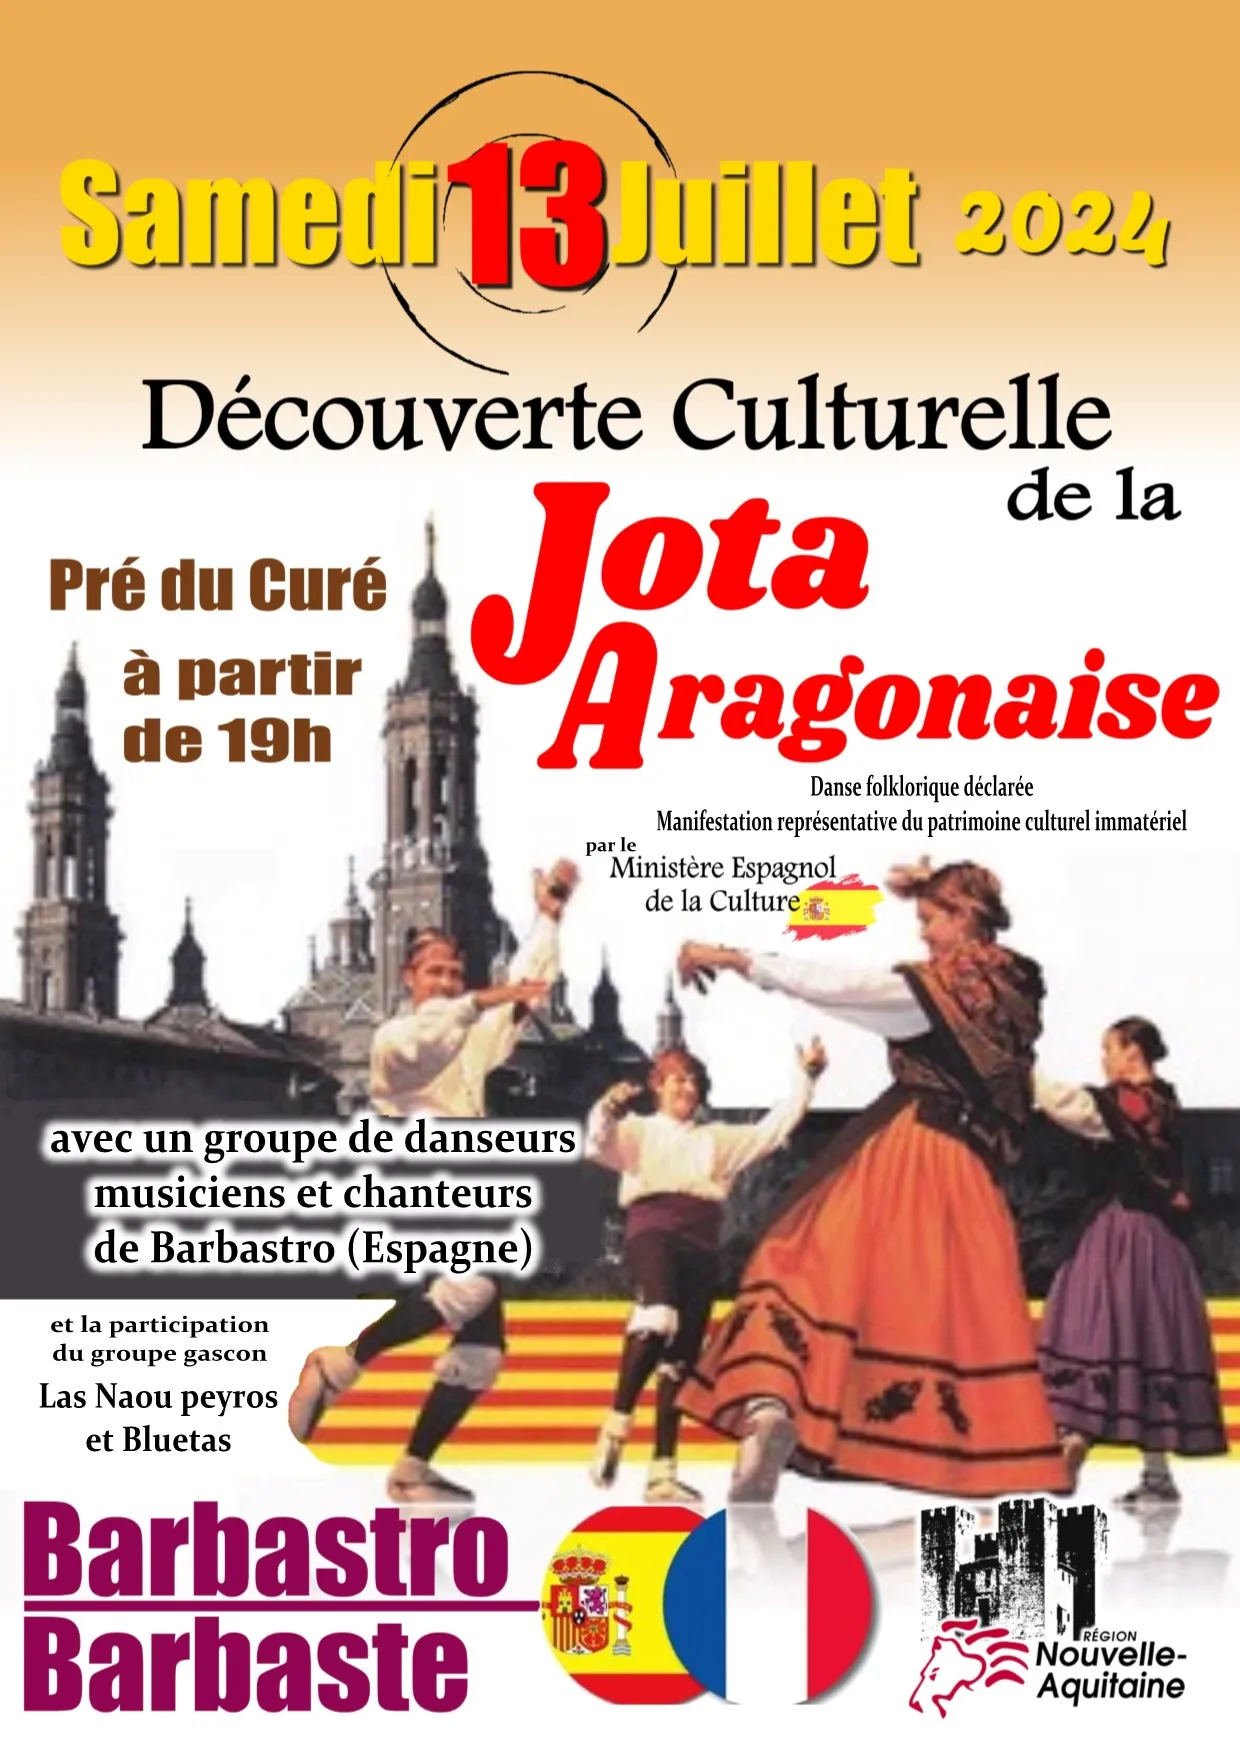 Image qui illustre: Découverte culturelle de la Jota Aragonaise à Barbaste - 0